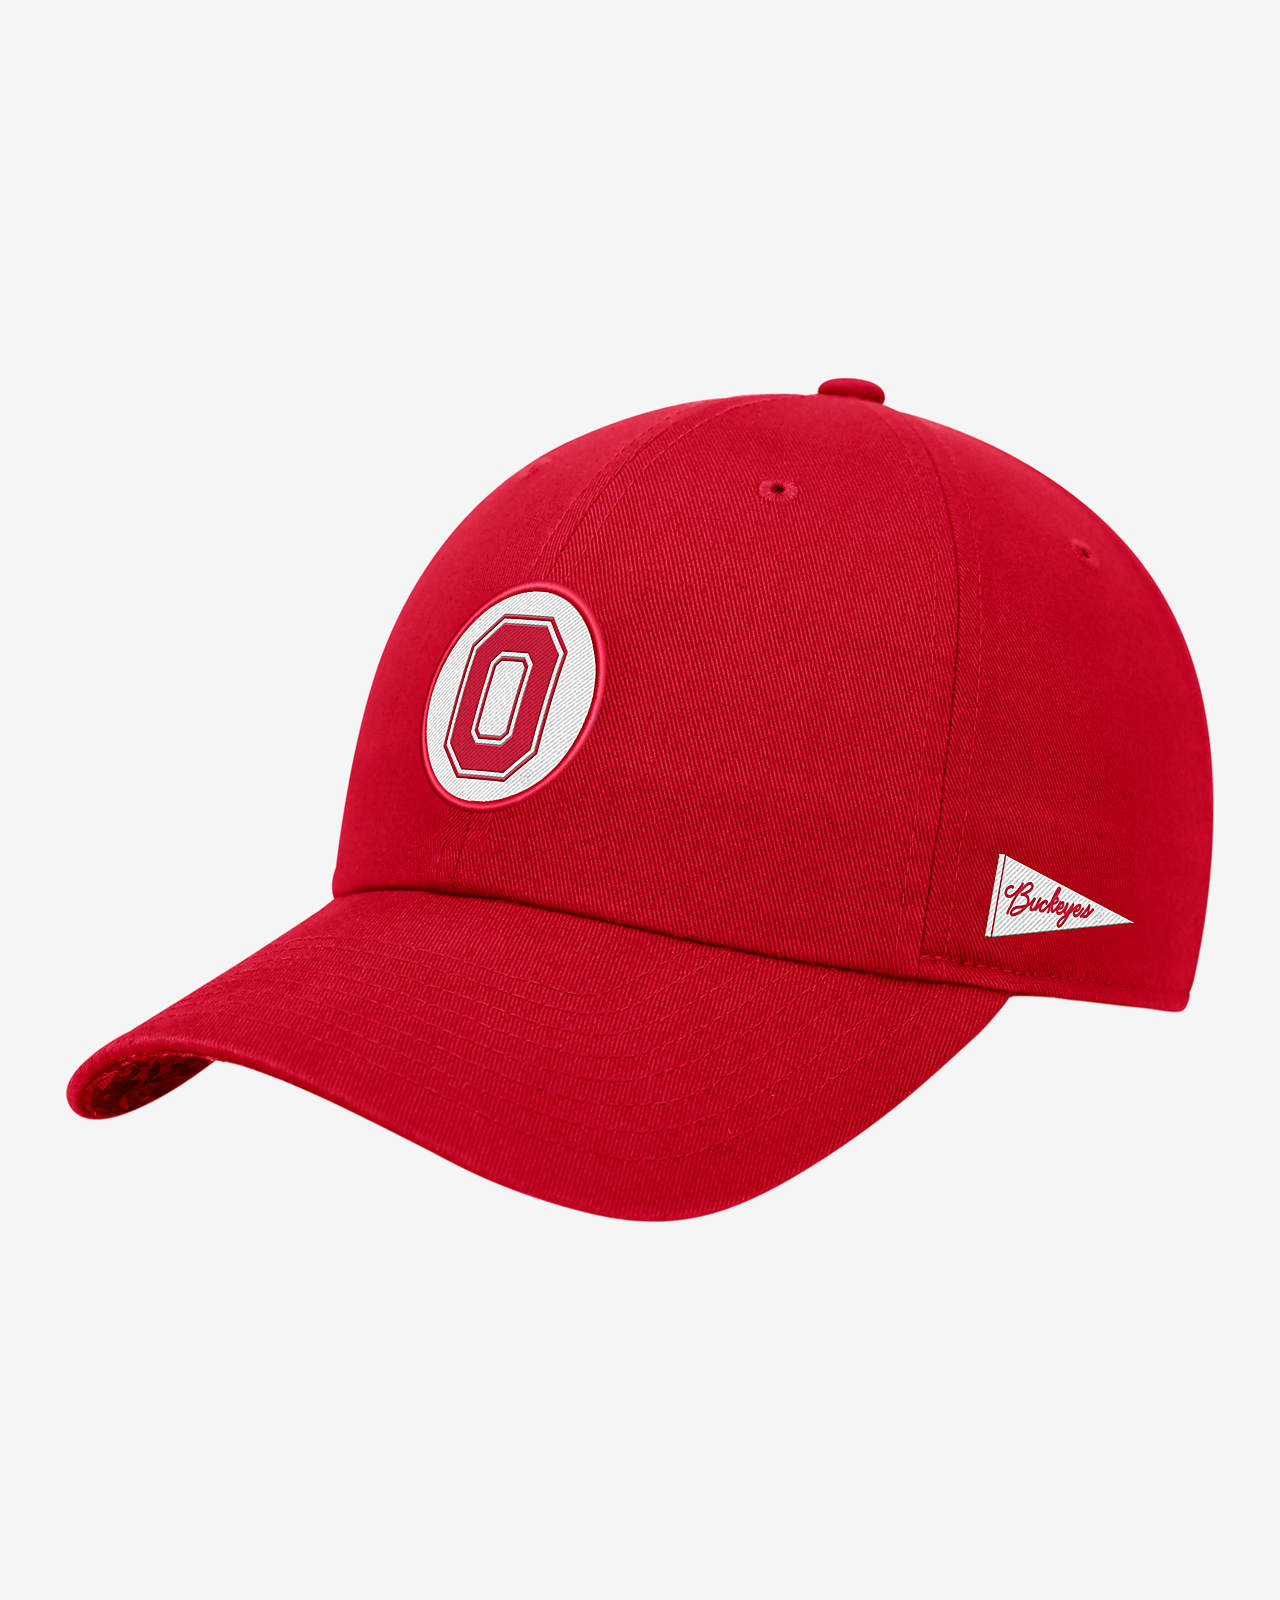 Gorra universitaria Nike ajustable con logotipo de Ohio State